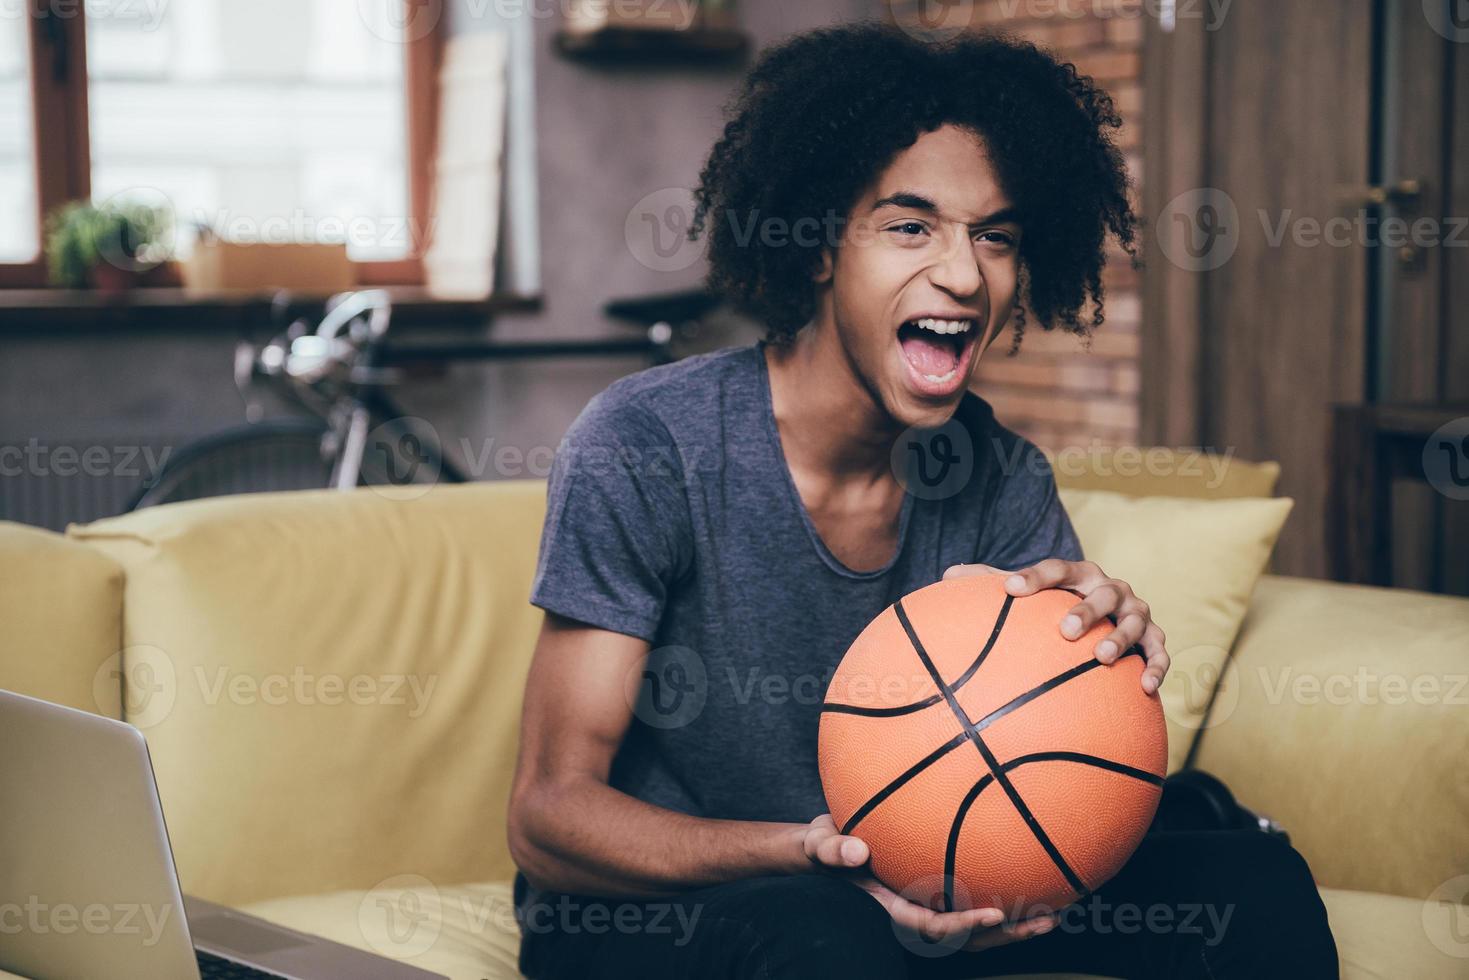 juichen voor zijn favoriete basketbal team. vrolijk jong Afrikaanse Mens aan het kijken TV en Holding basketbal bal terwijl zittend Aan de bankstel Bij huis foto